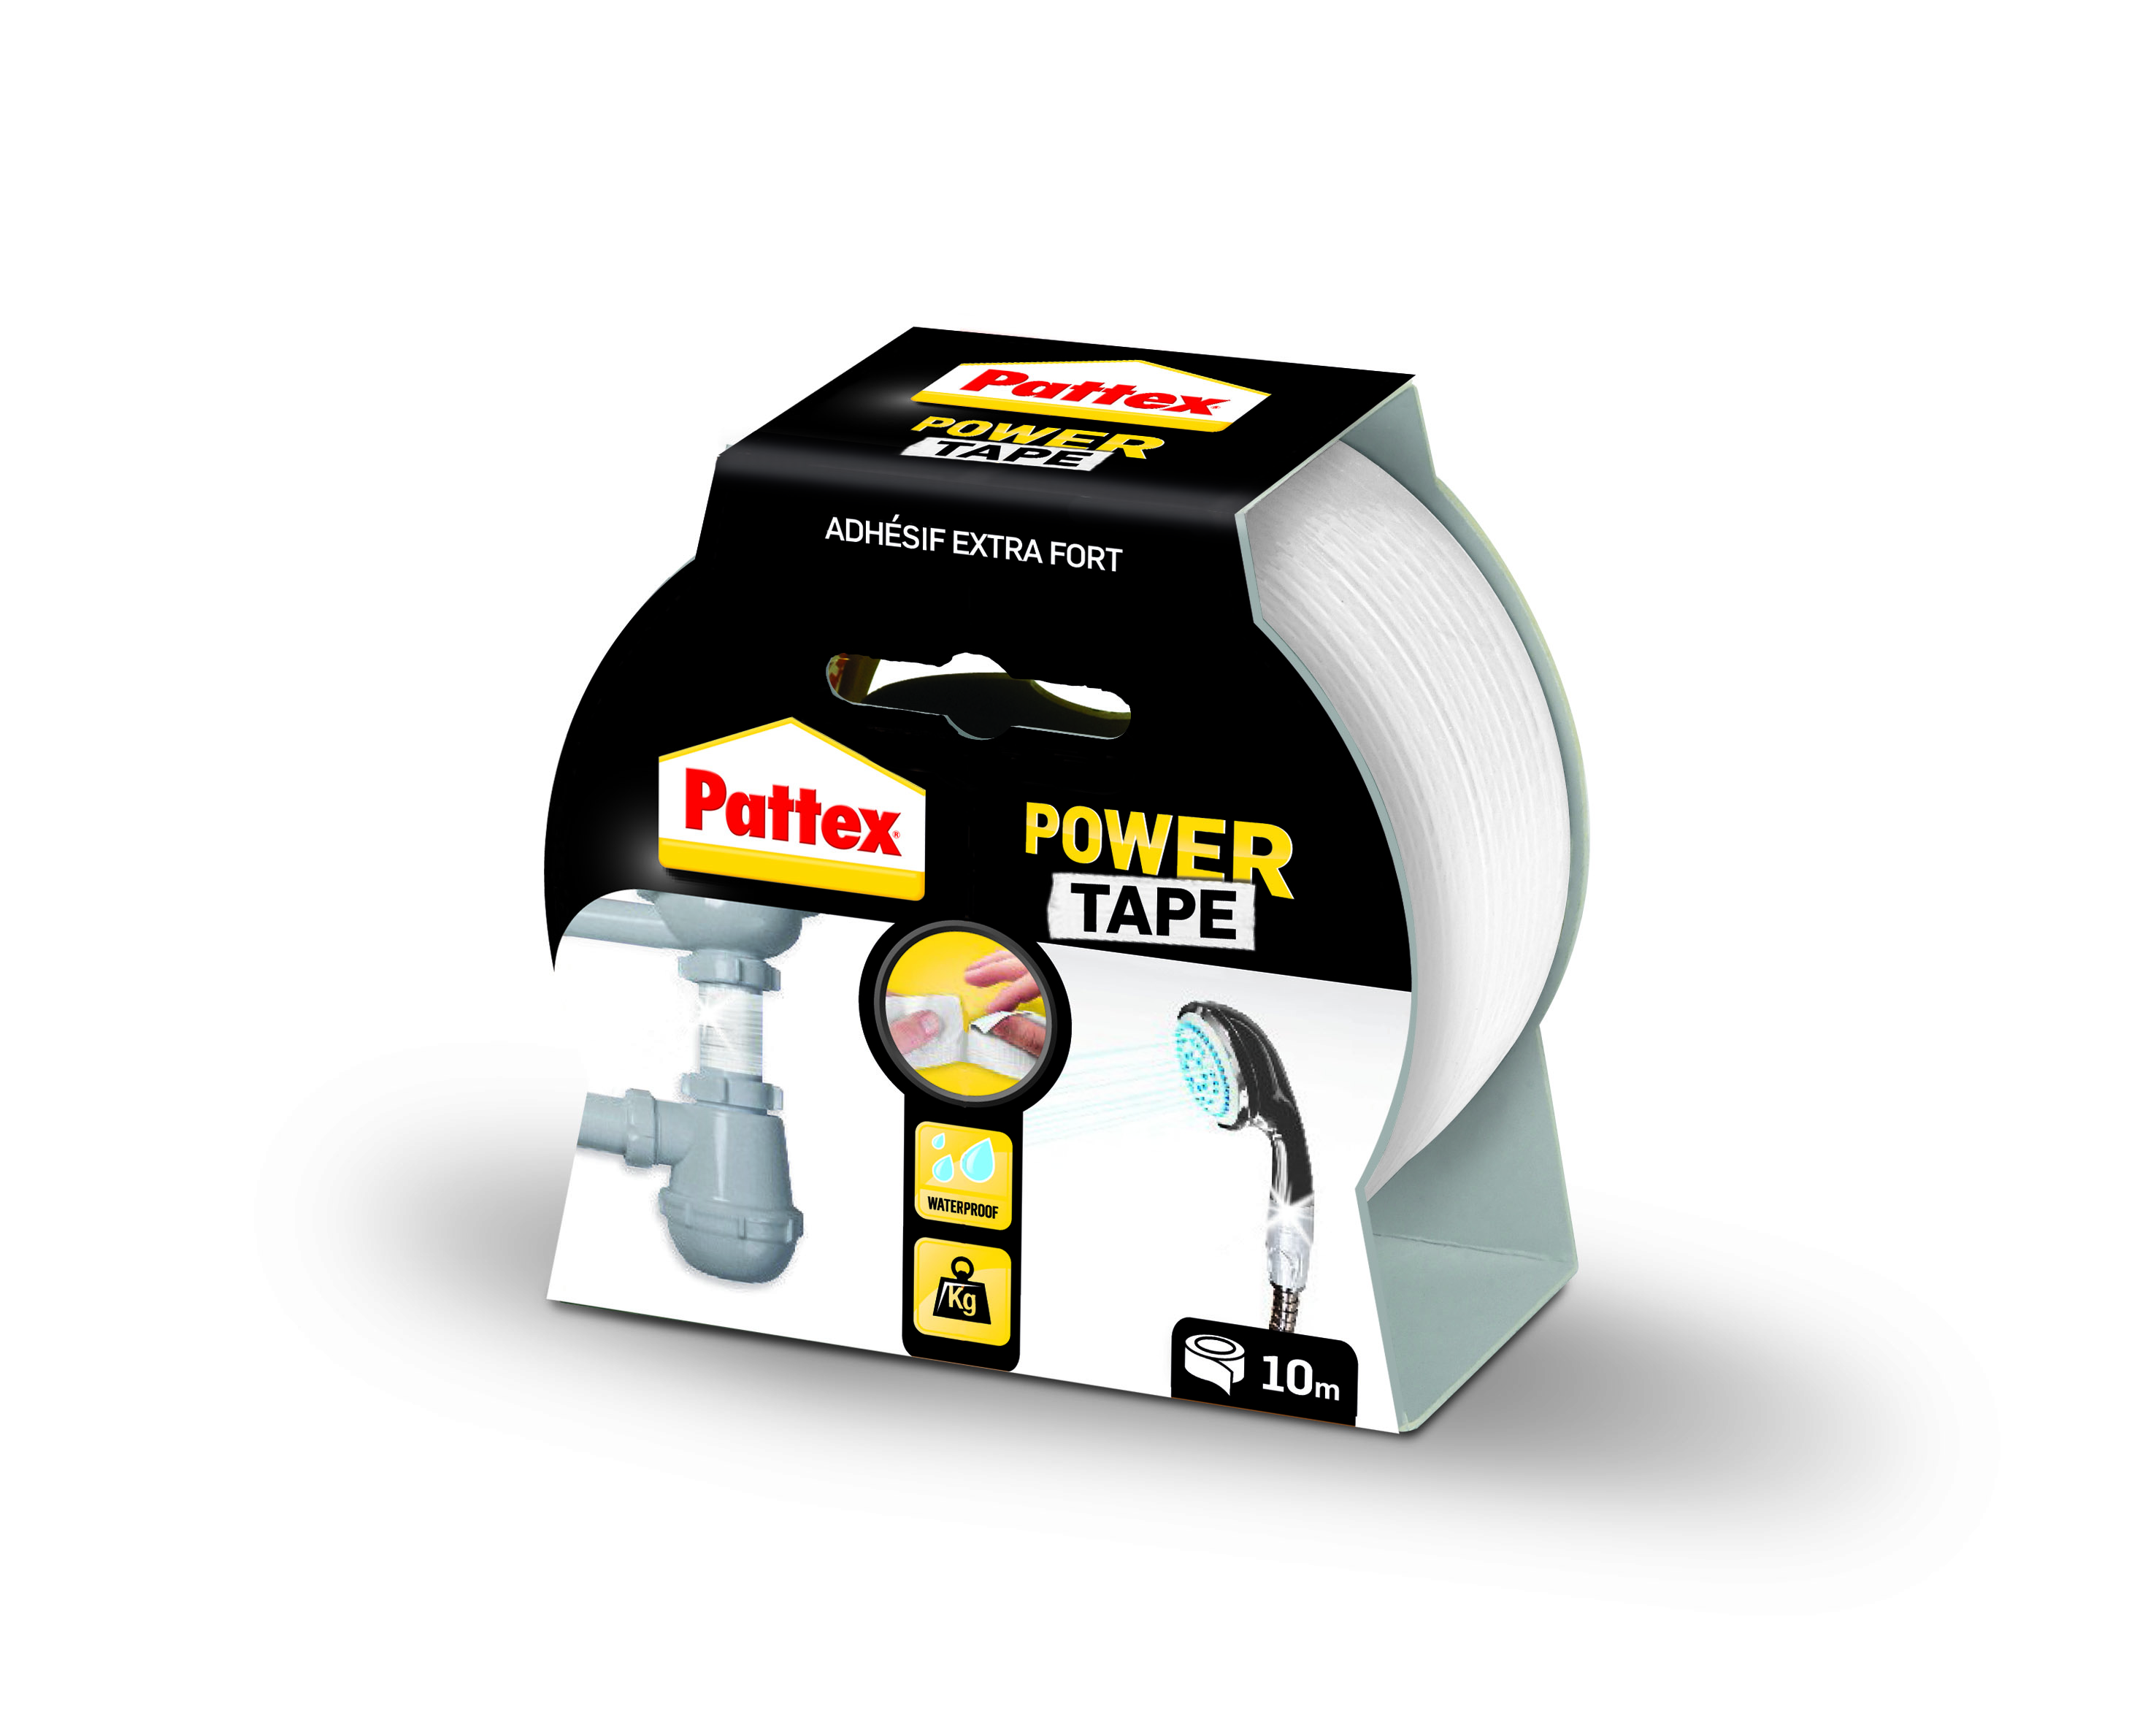 Pattex adhésifs réparation power tape blanc etui 10m - PATTEX